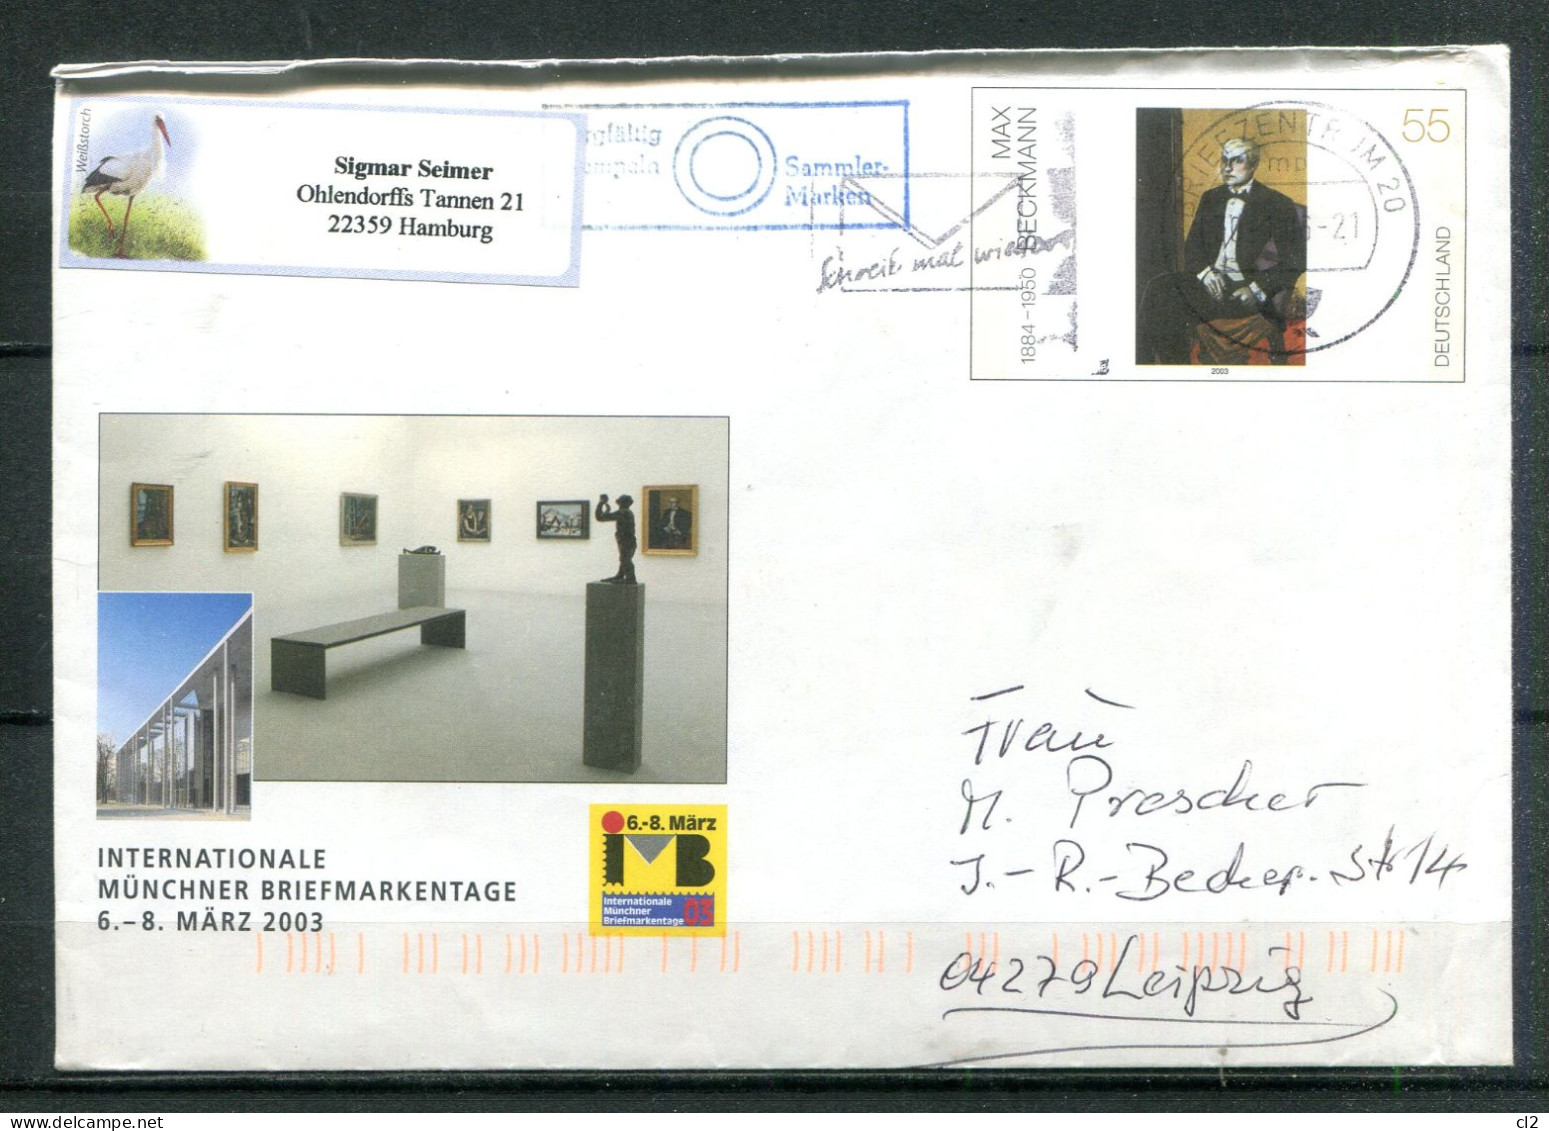 REPUBLIQUE FEDERALE ALLEMANDE - Ganzsache (Entier Postal) - Mi USo 54(Internationale Münchner Briefmarkentage) - Umschläge - Gebraucht